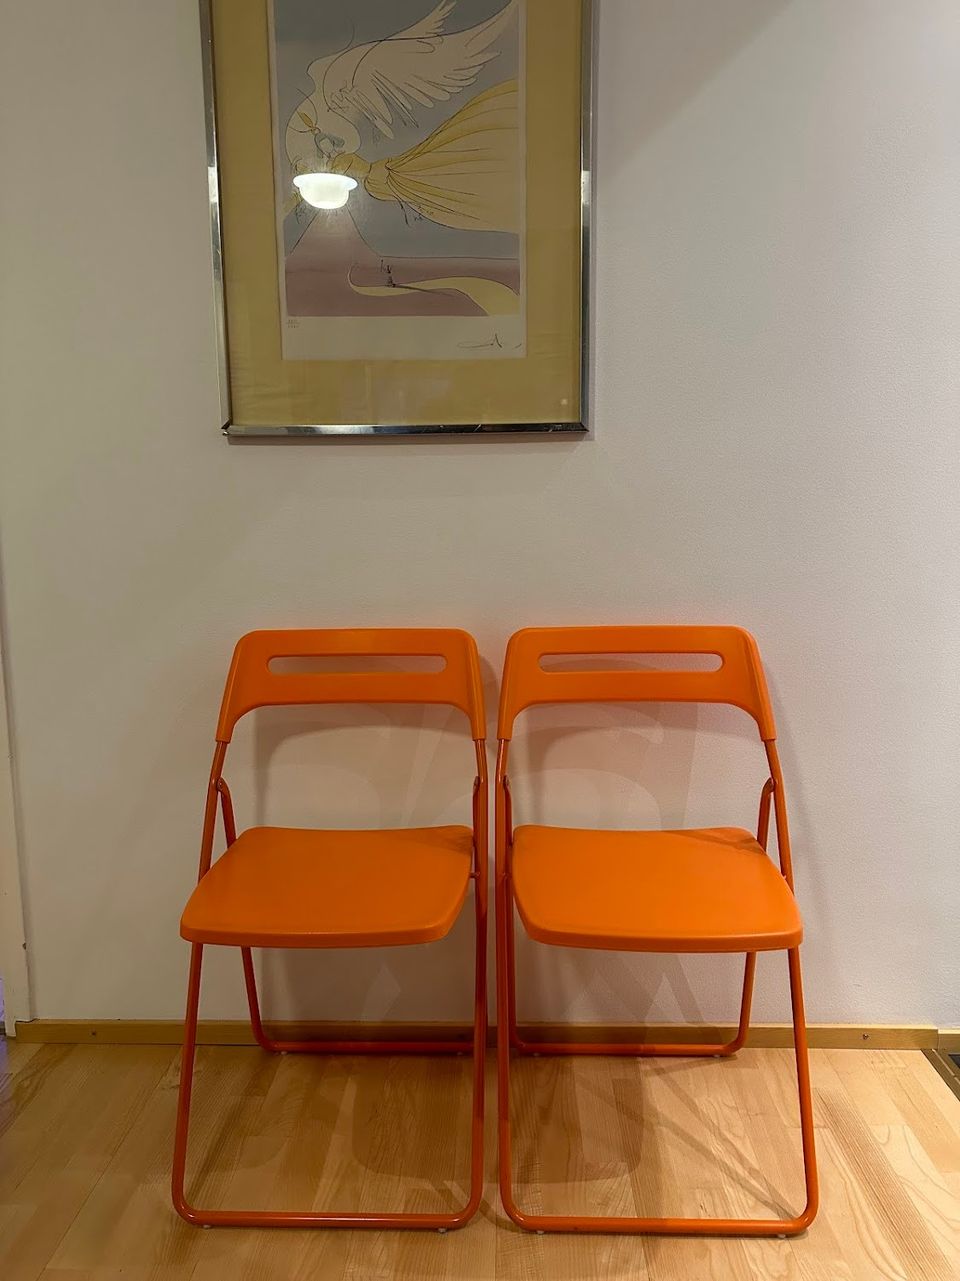 Ikea oranssi tuoli / Orange chairs